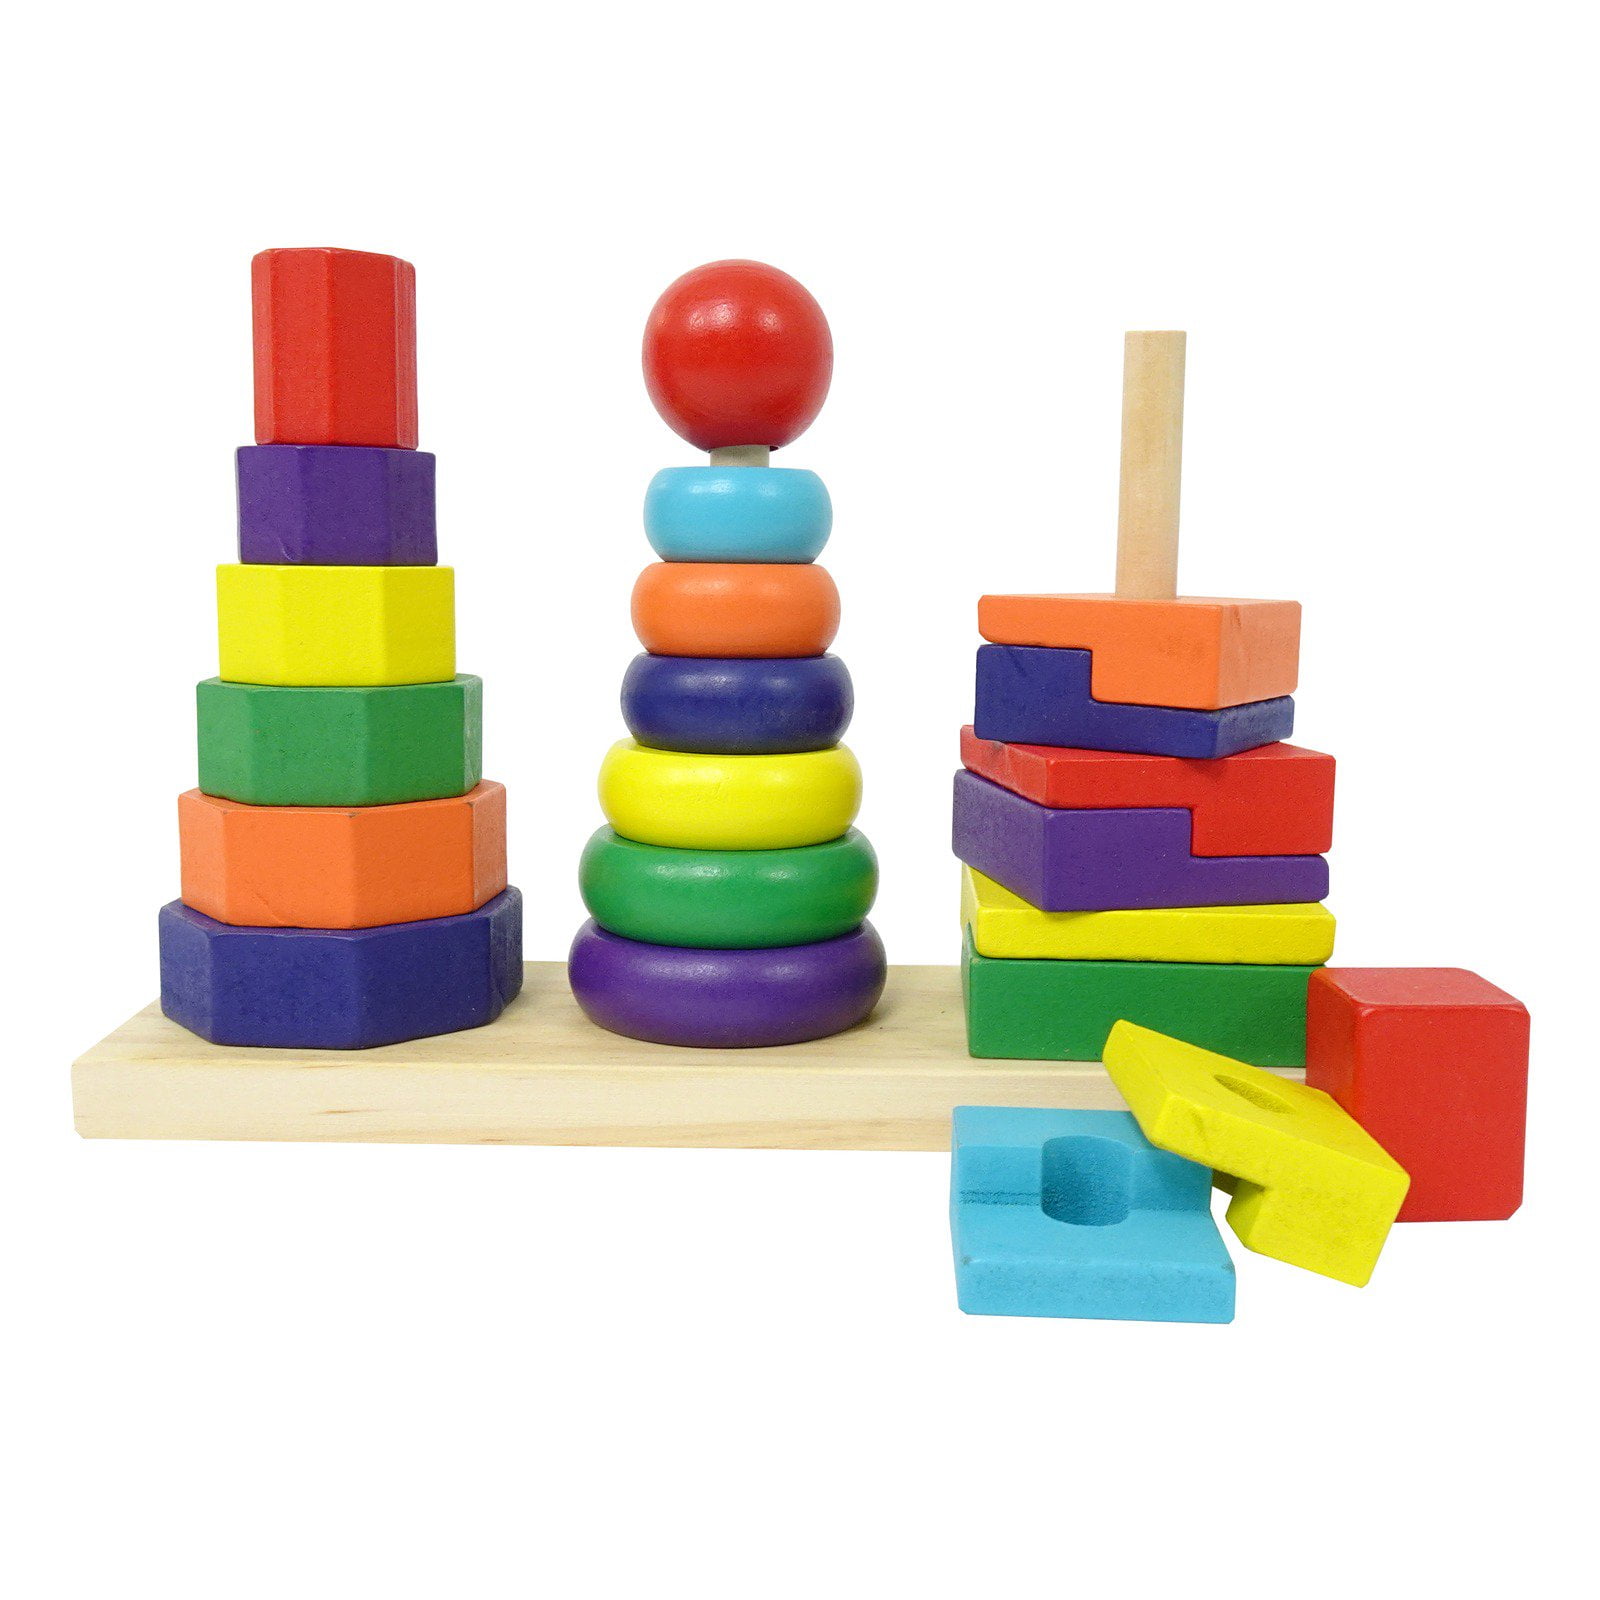 stacking toys walmart